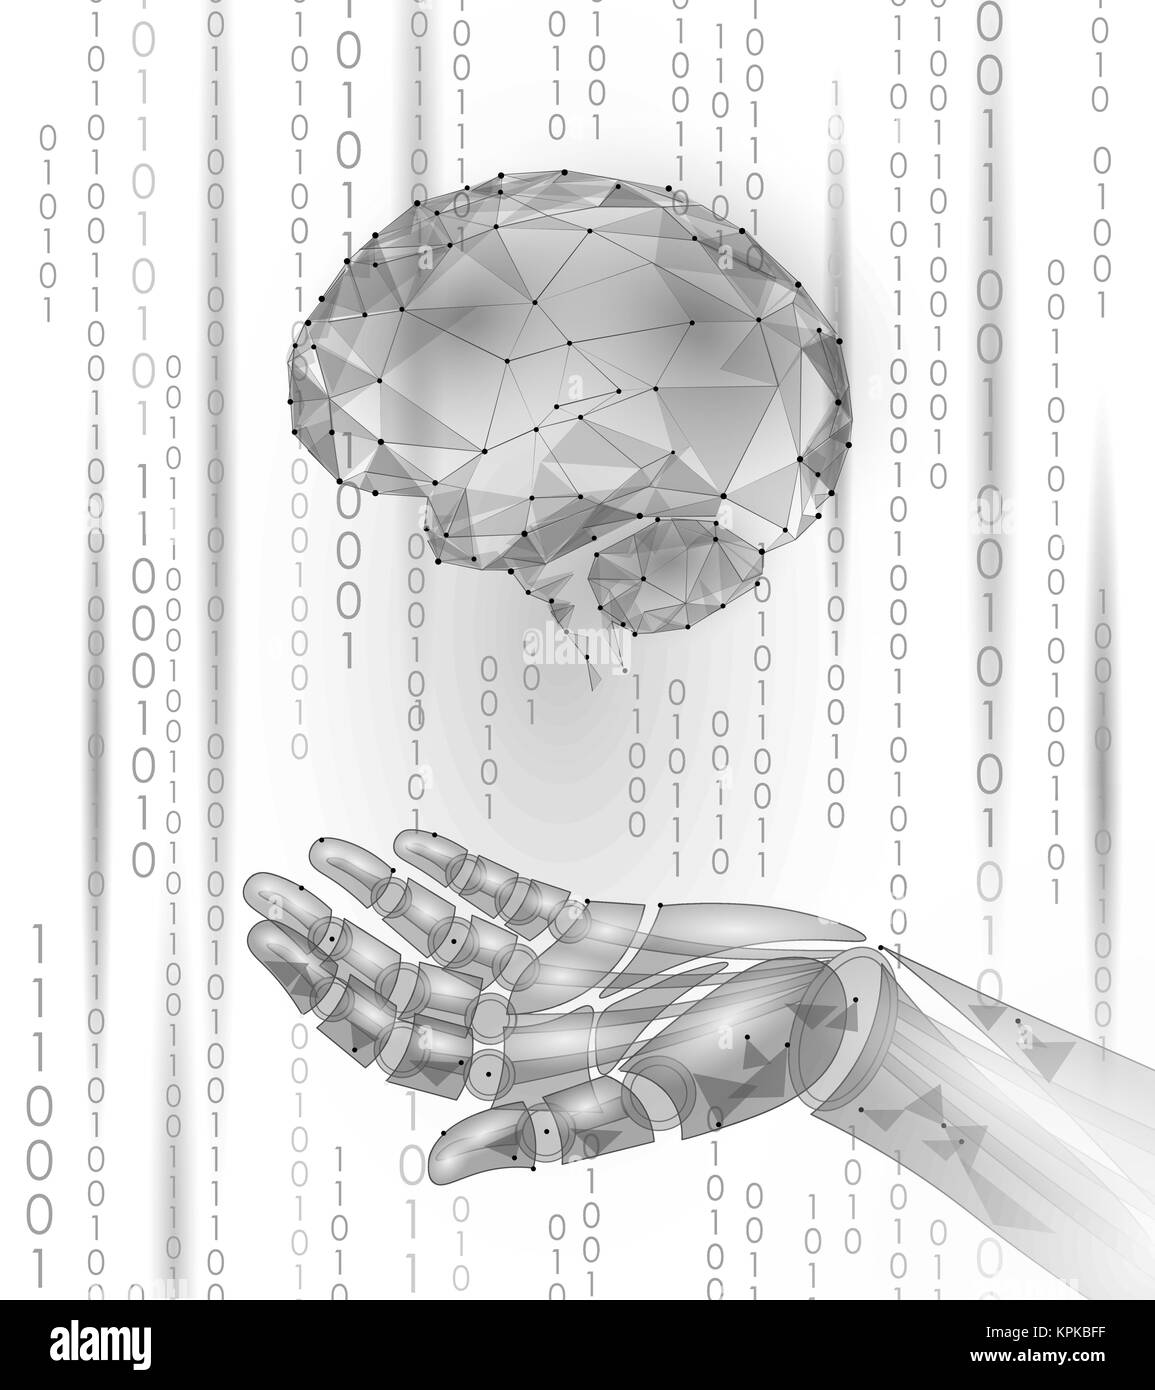 Roboter android Hand halten menschliche Gehirn. Low Poly polygonalen Partikeln Point Line geometrische Rendern. Geistige Bildung kreative Idee Zukunft verstand Technologiekonzept weiß binären Code Vector Illustration Stock Vektor